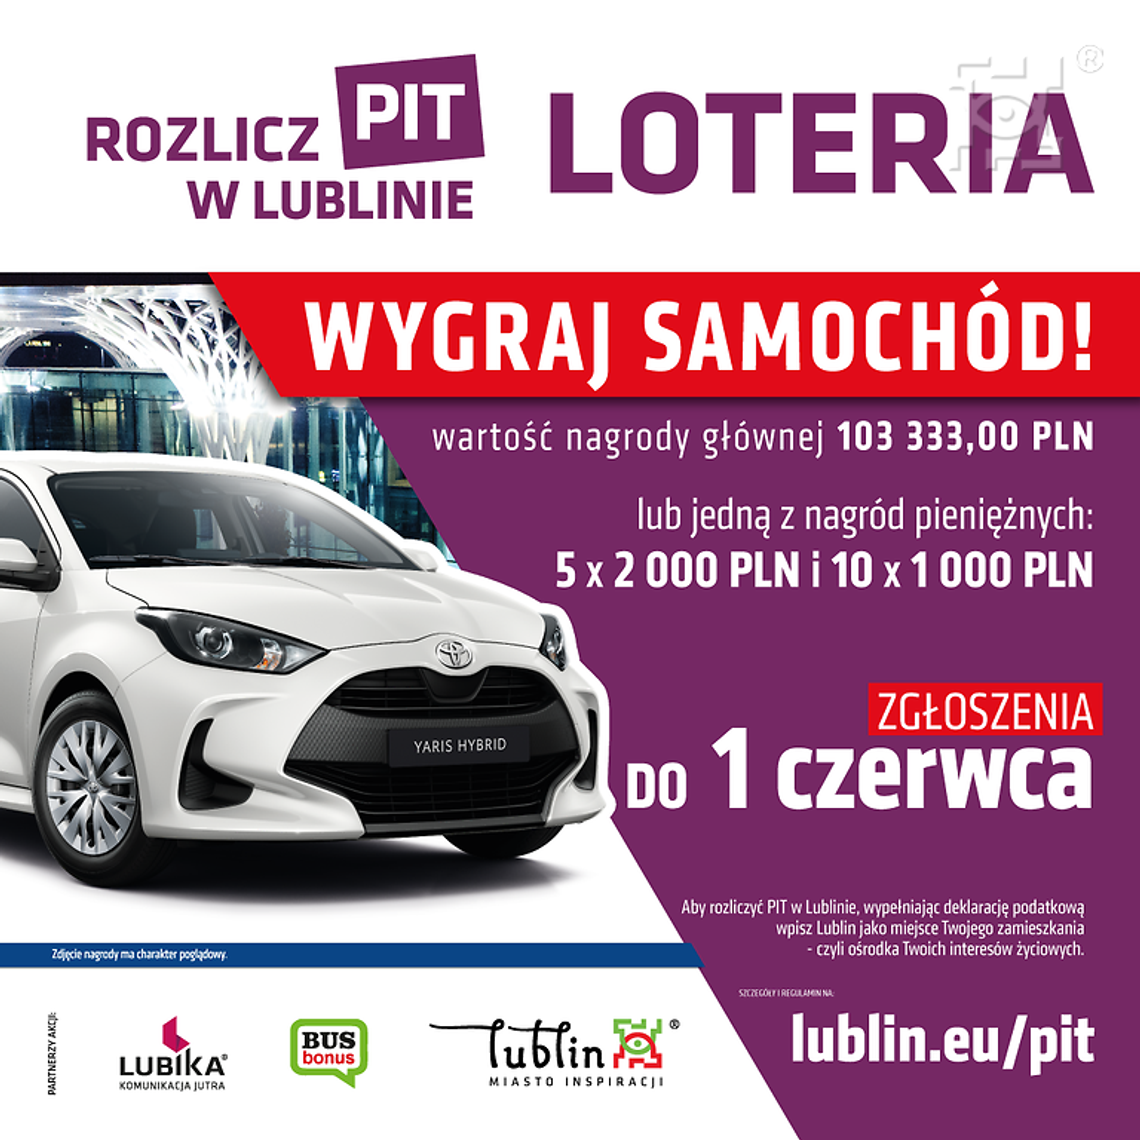 Rozliczasz PIT w Lublinie? Weź udział w loterii z nagrodami